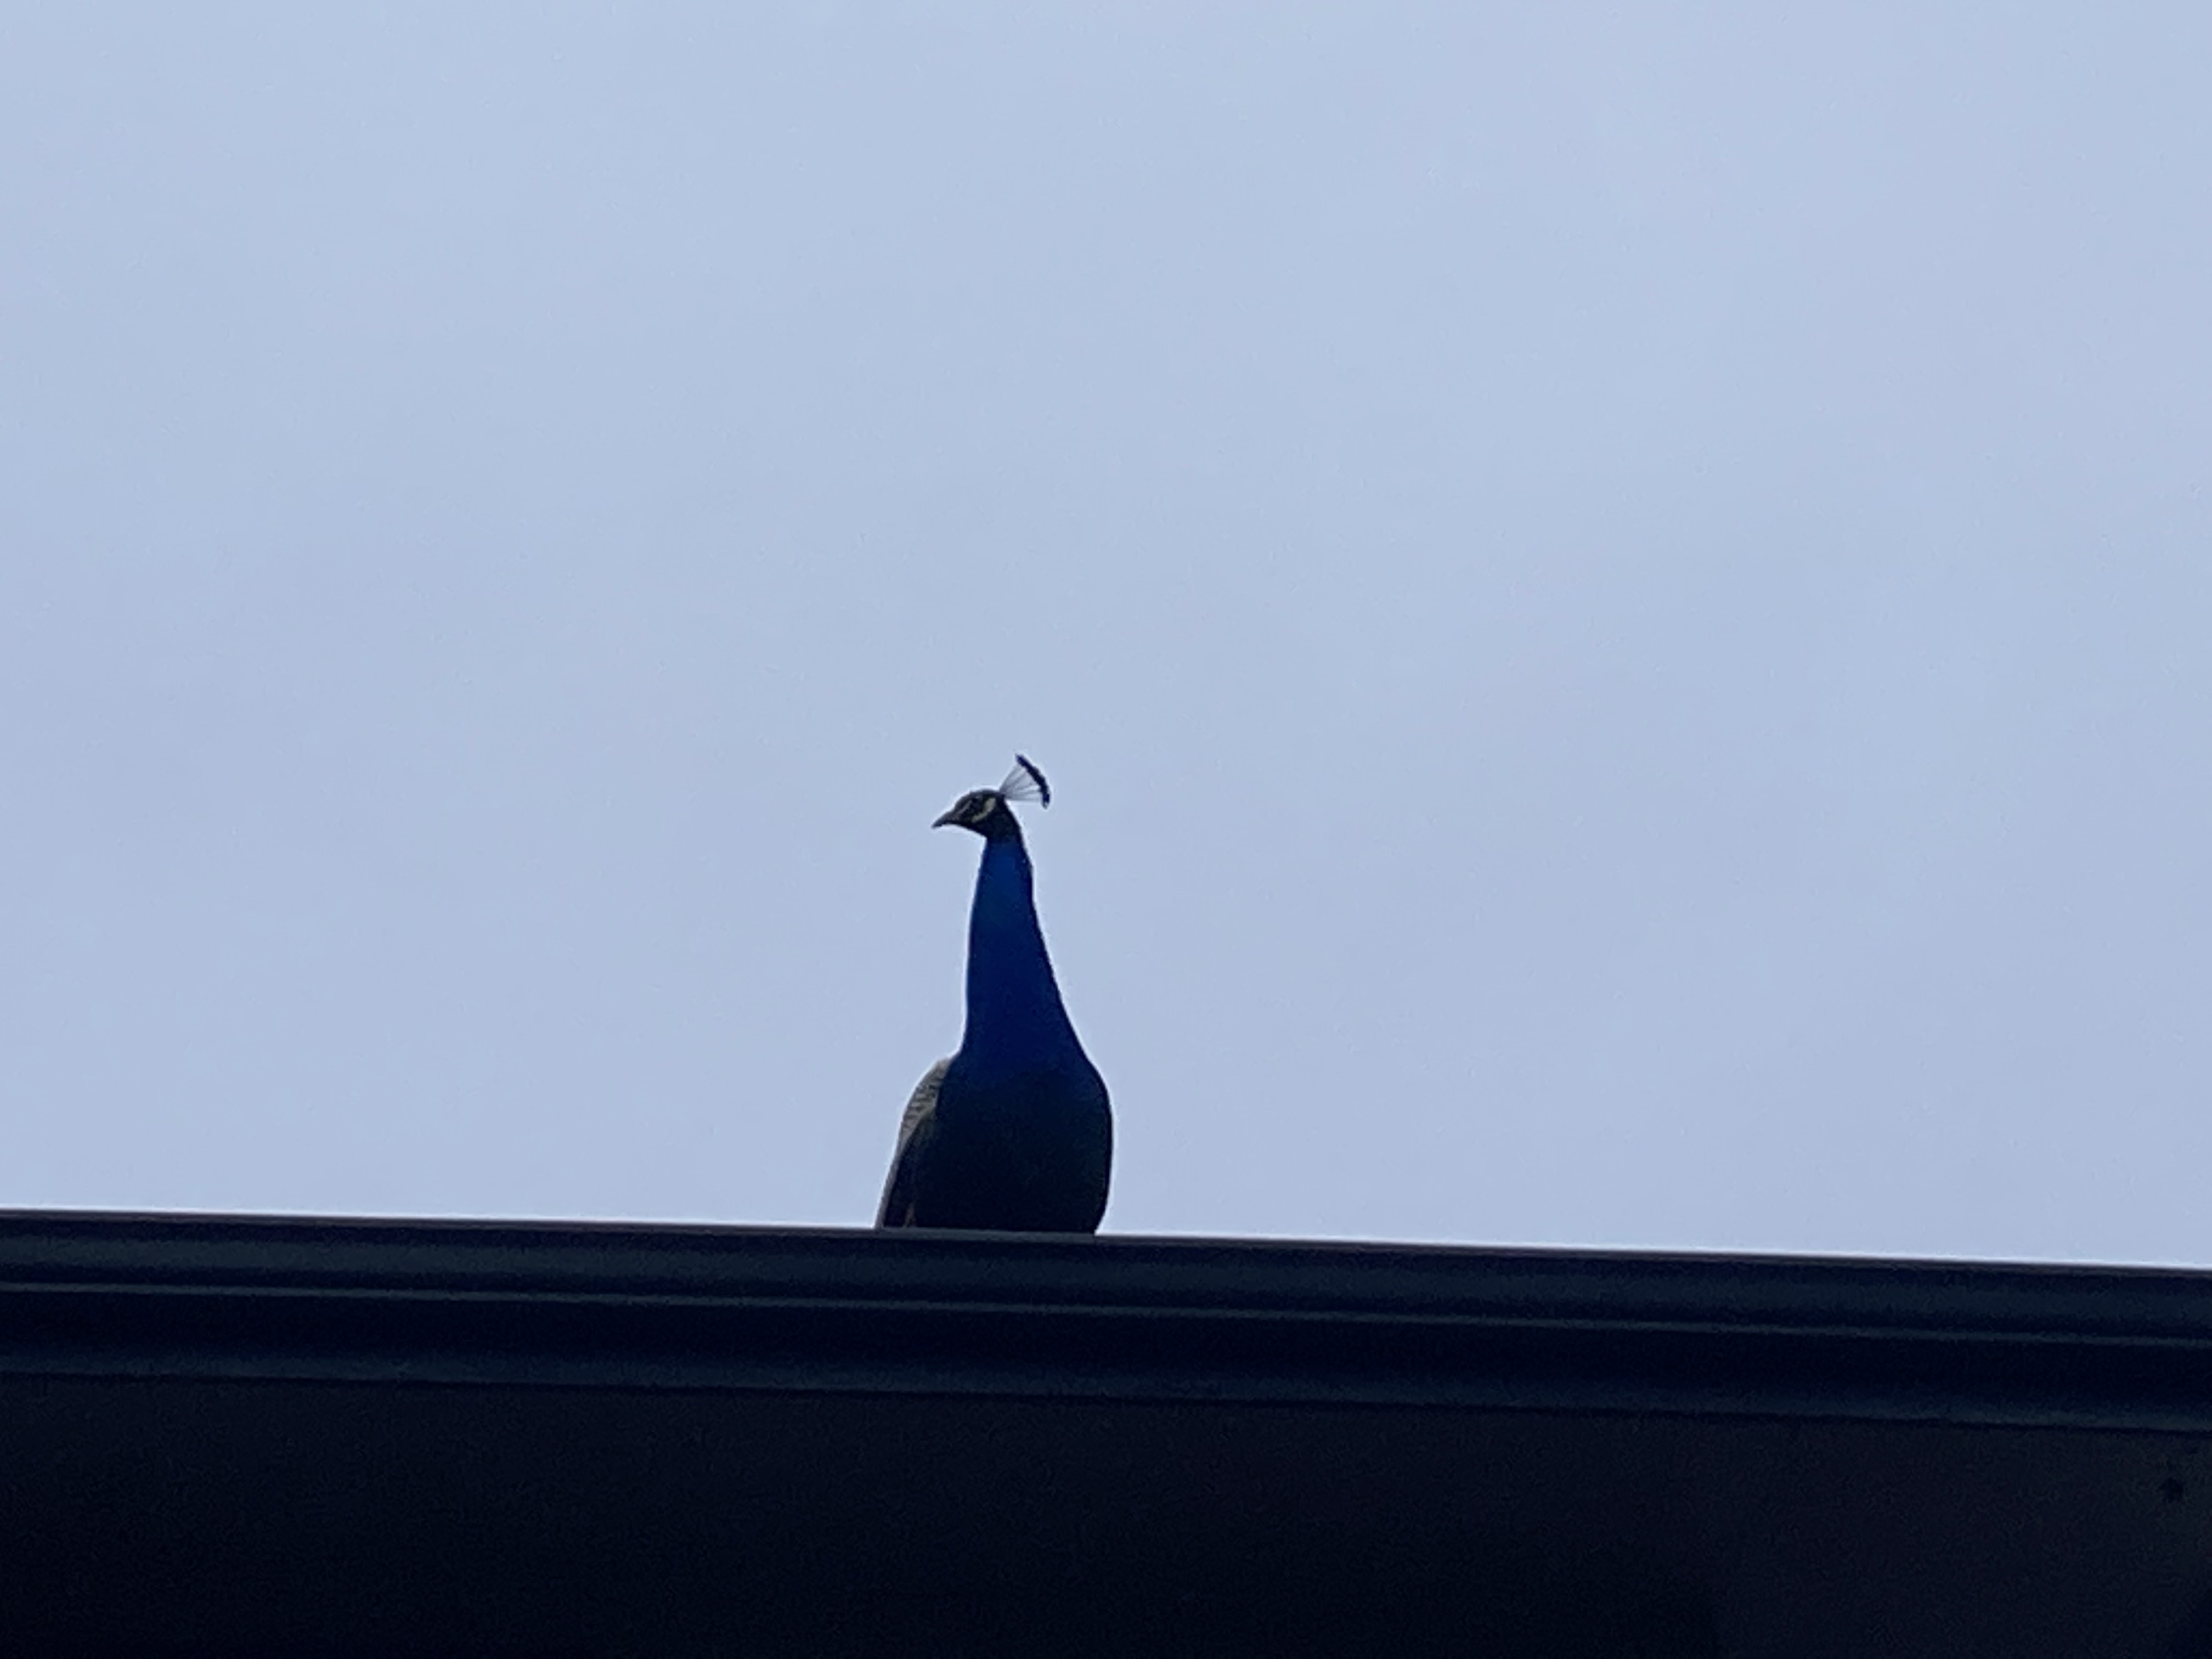 peacock_on_roof.jpeg